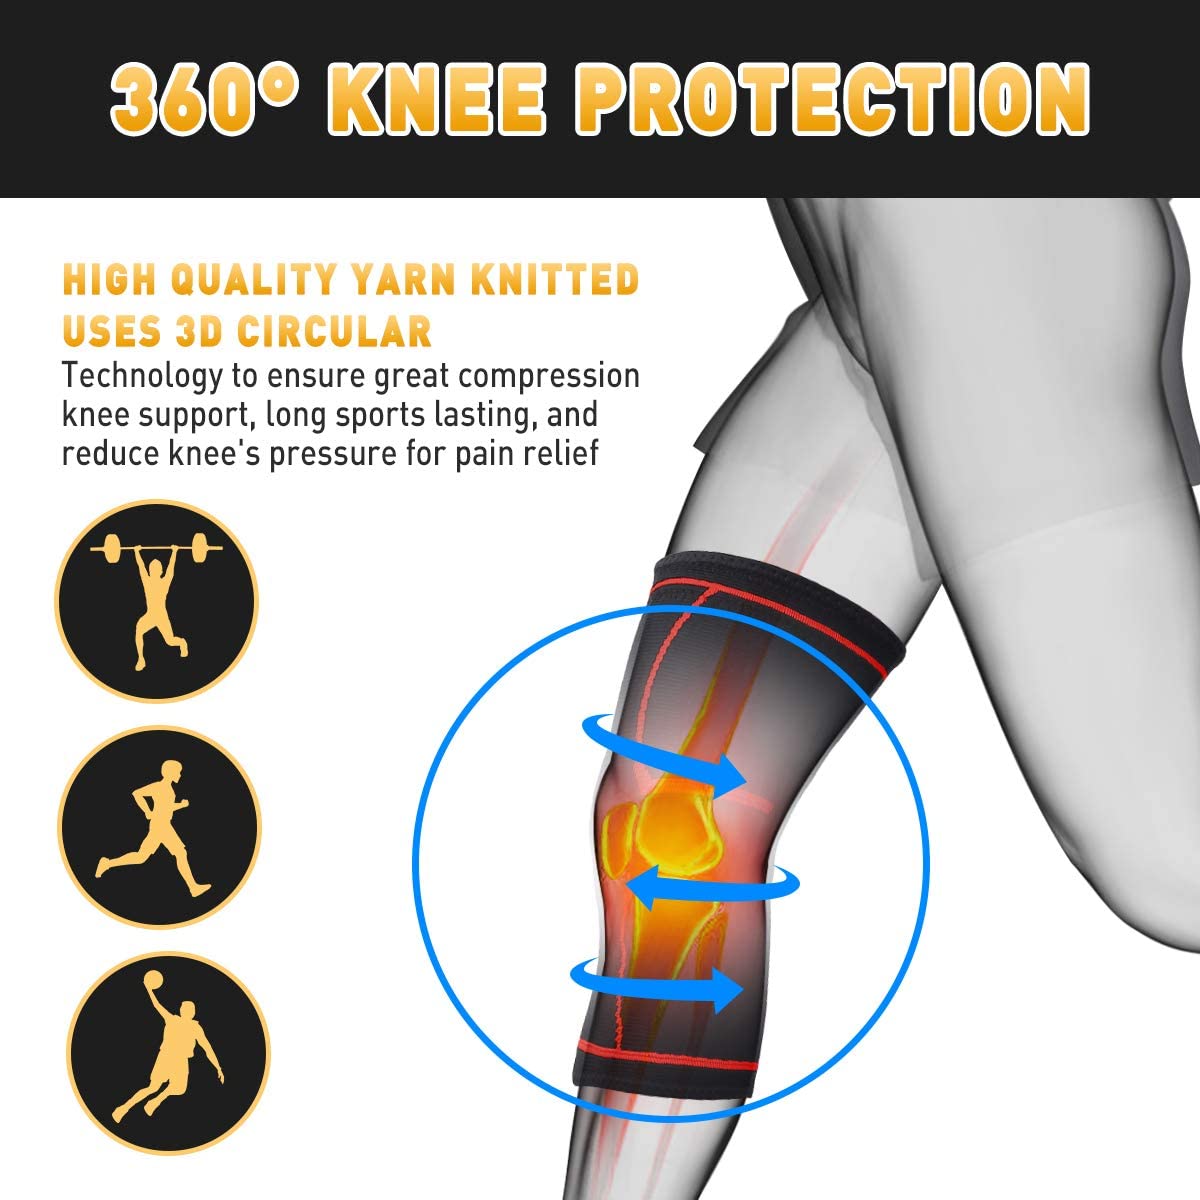 US$ 24.77 - Knee Braces for Knee Pain Women & Men - 2 Pack Knee